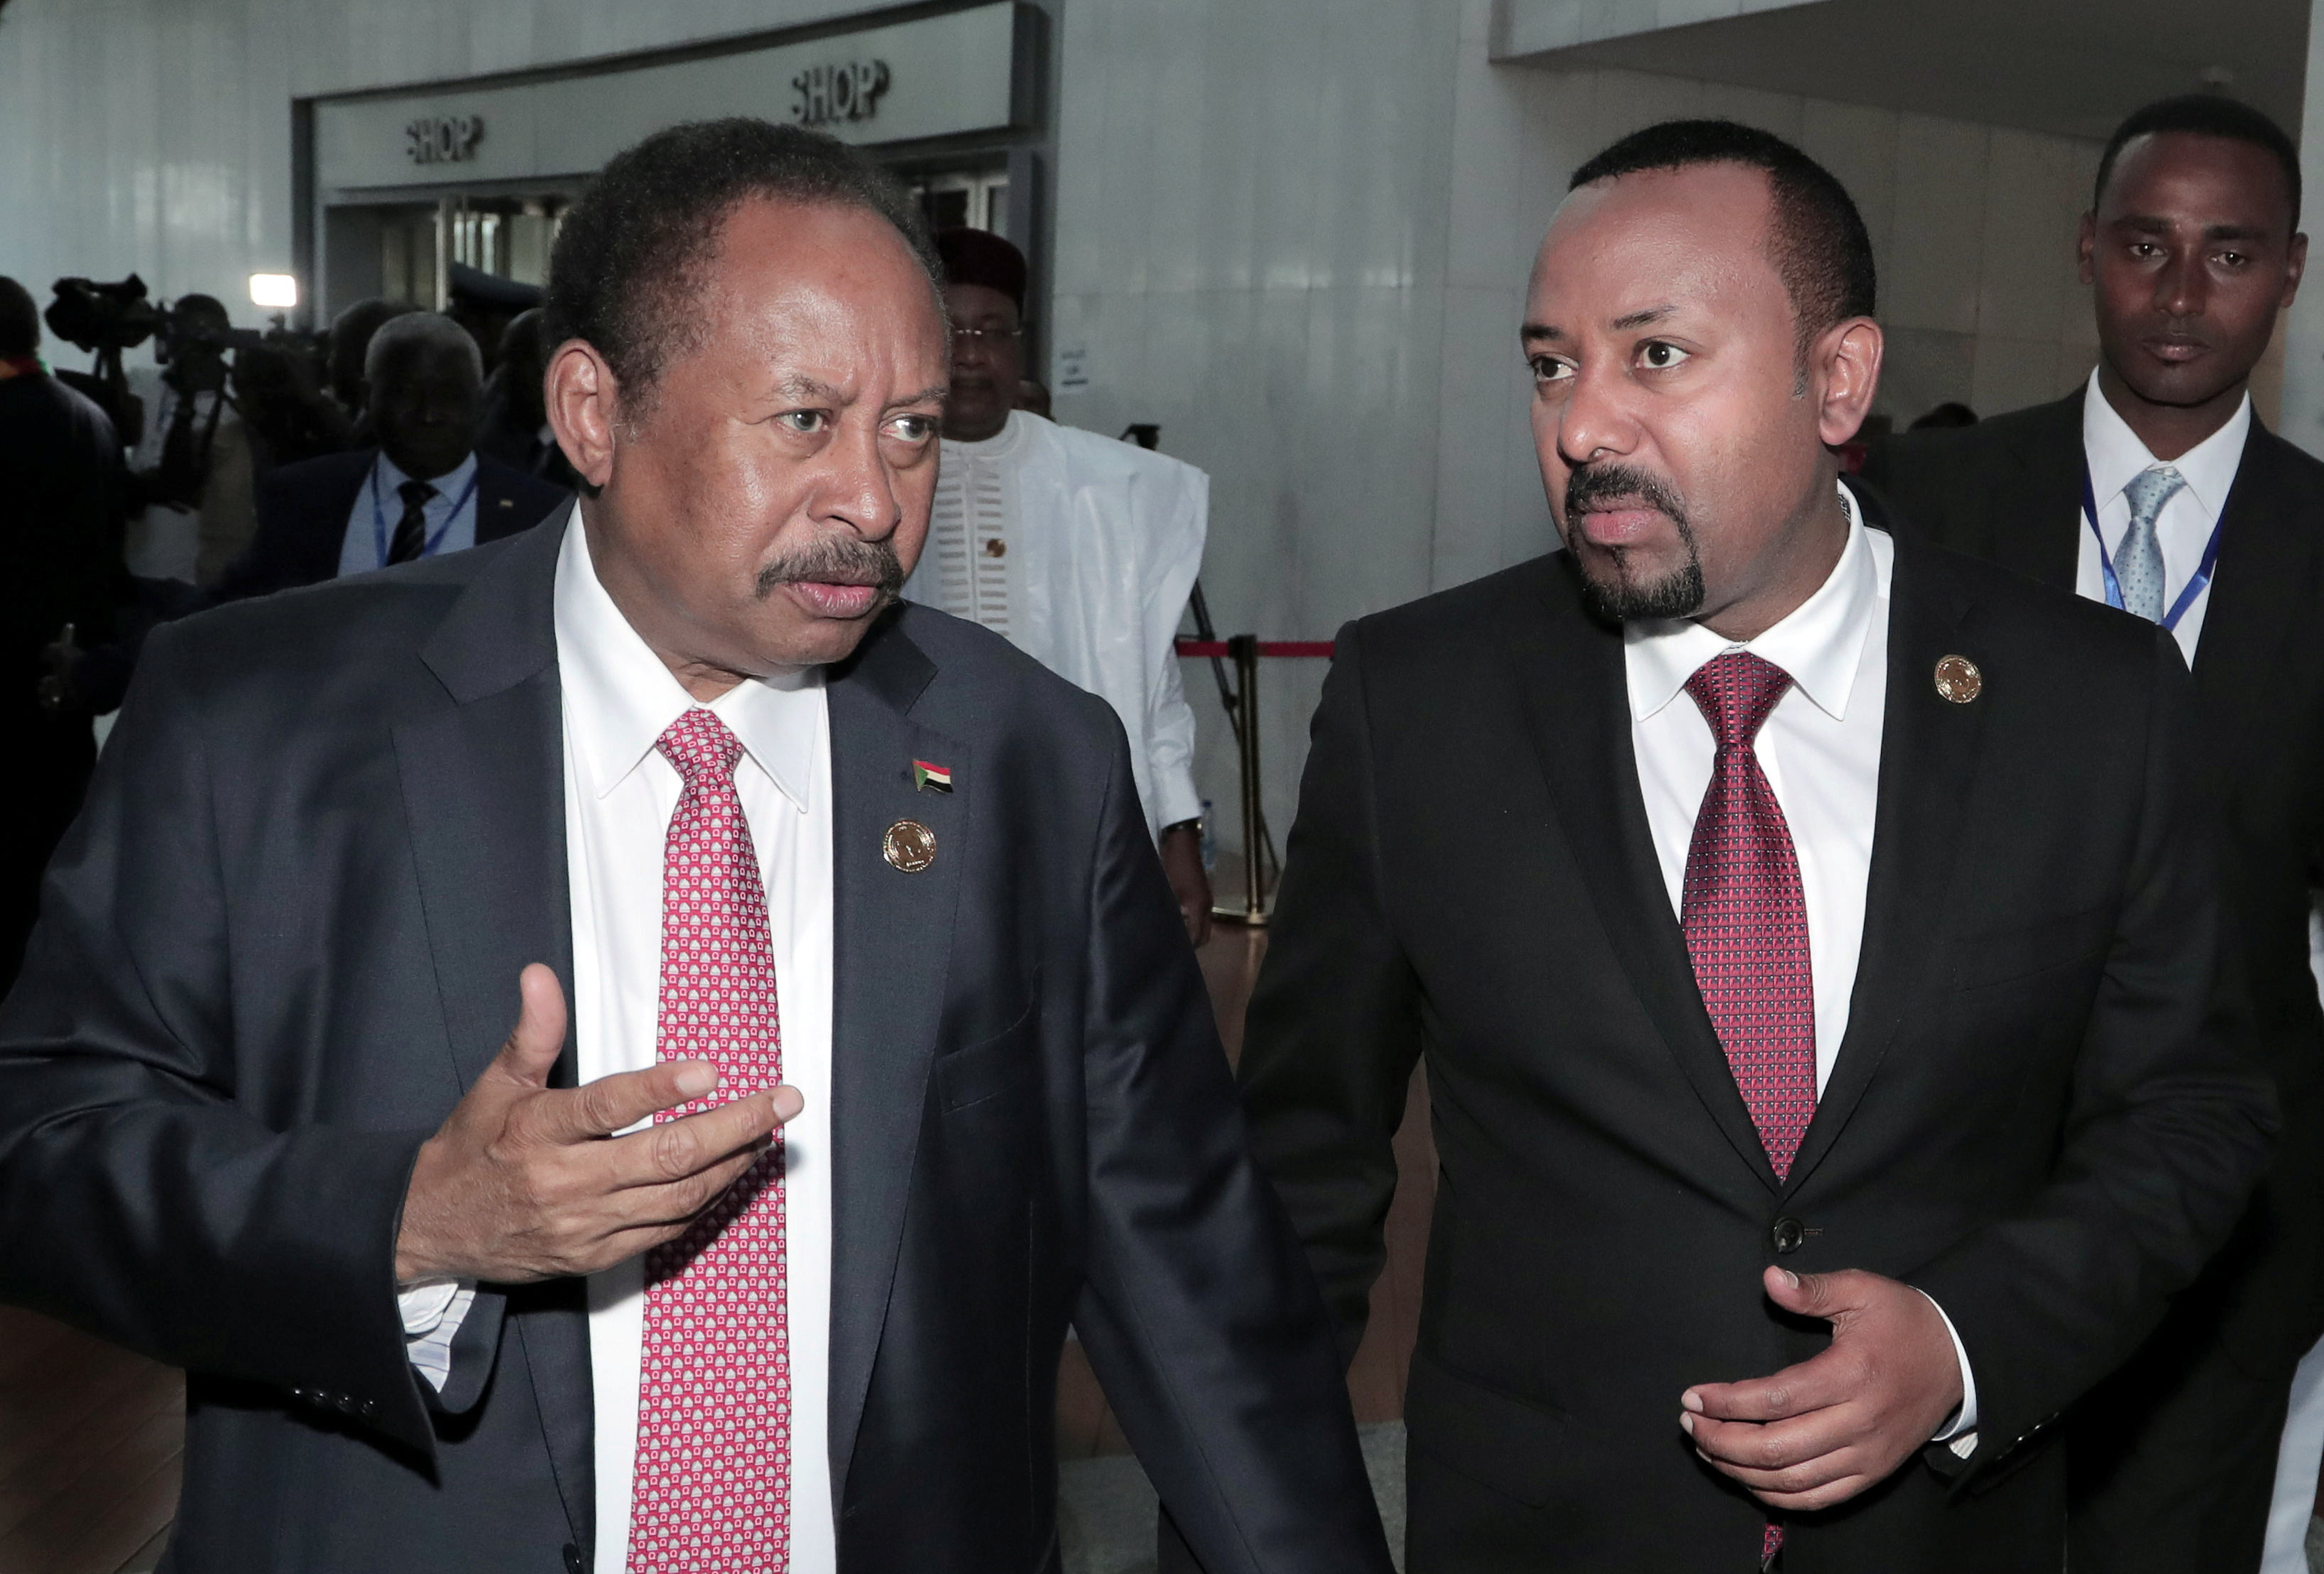 Sudan’s Prime Minister Abdalla Hamdok and Ethiopia’s Prime Minister Abiy Ahmed